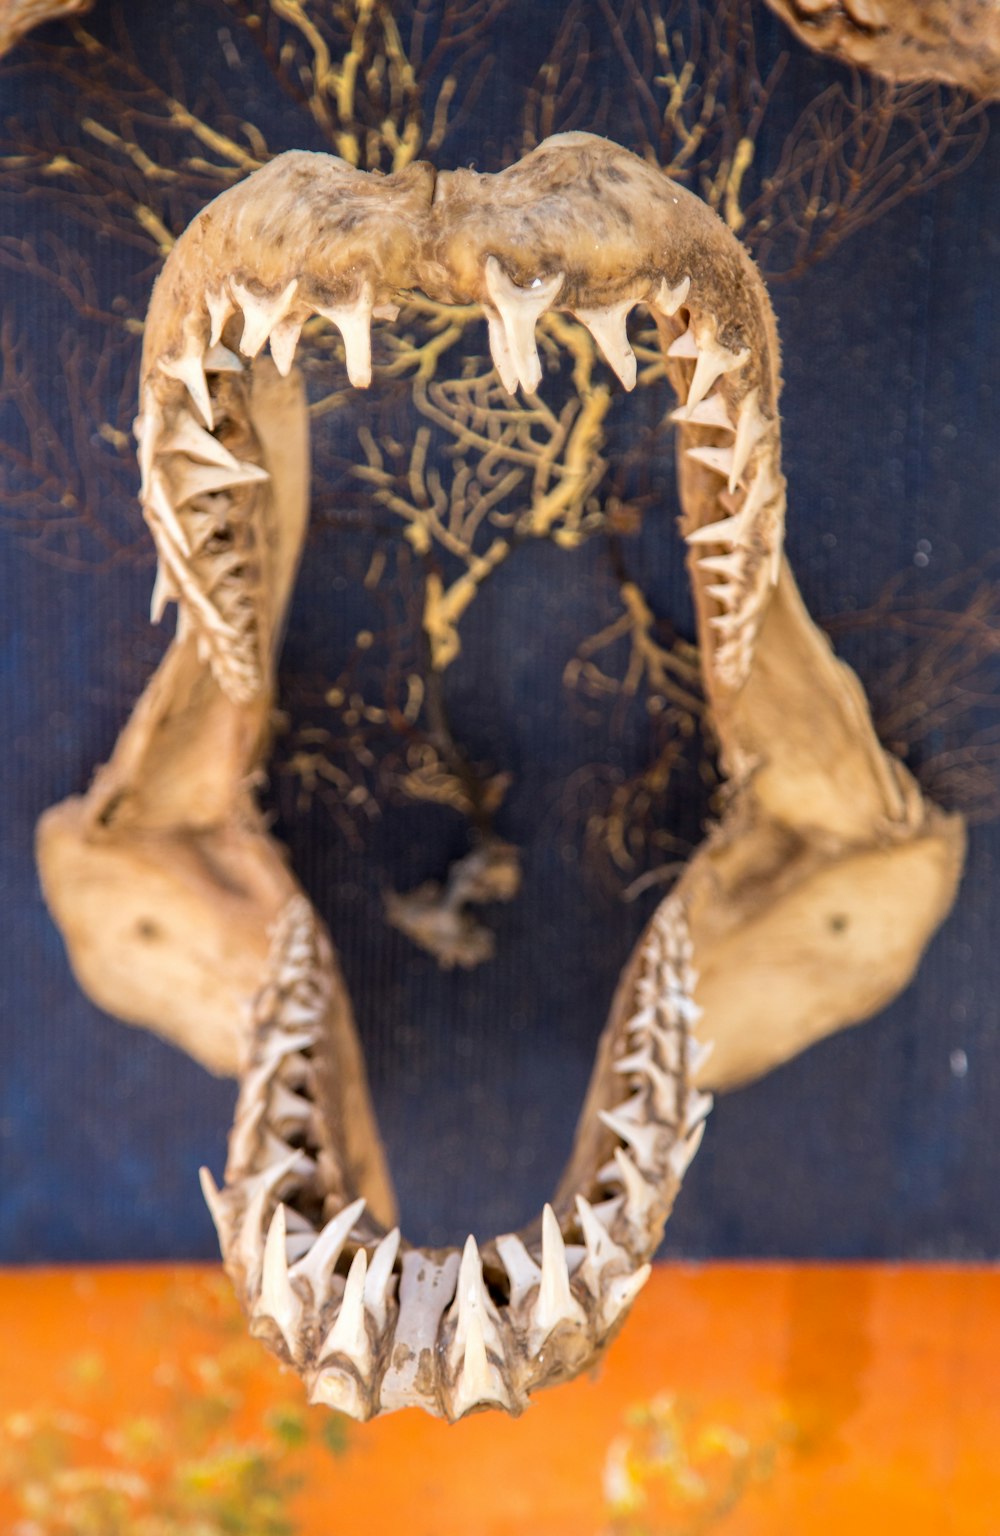 Esqueleto de hueso de la mandíbula de un tiburón